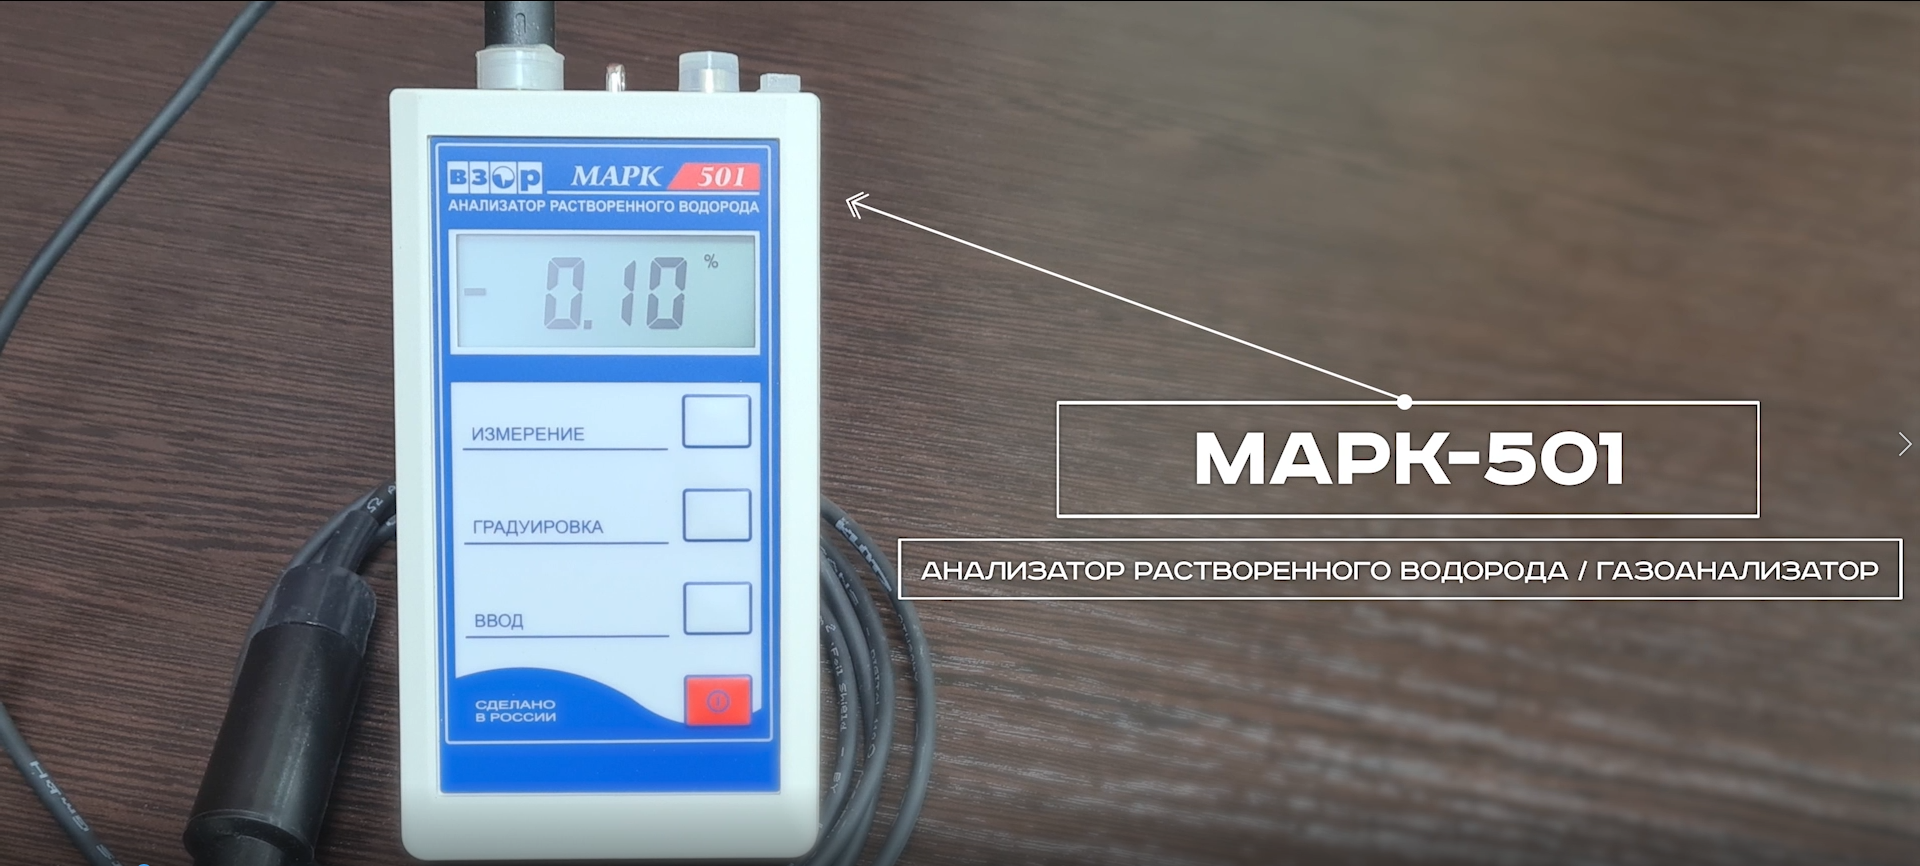 Анализатор растворенного водорода / газоанализатор МАРК-501